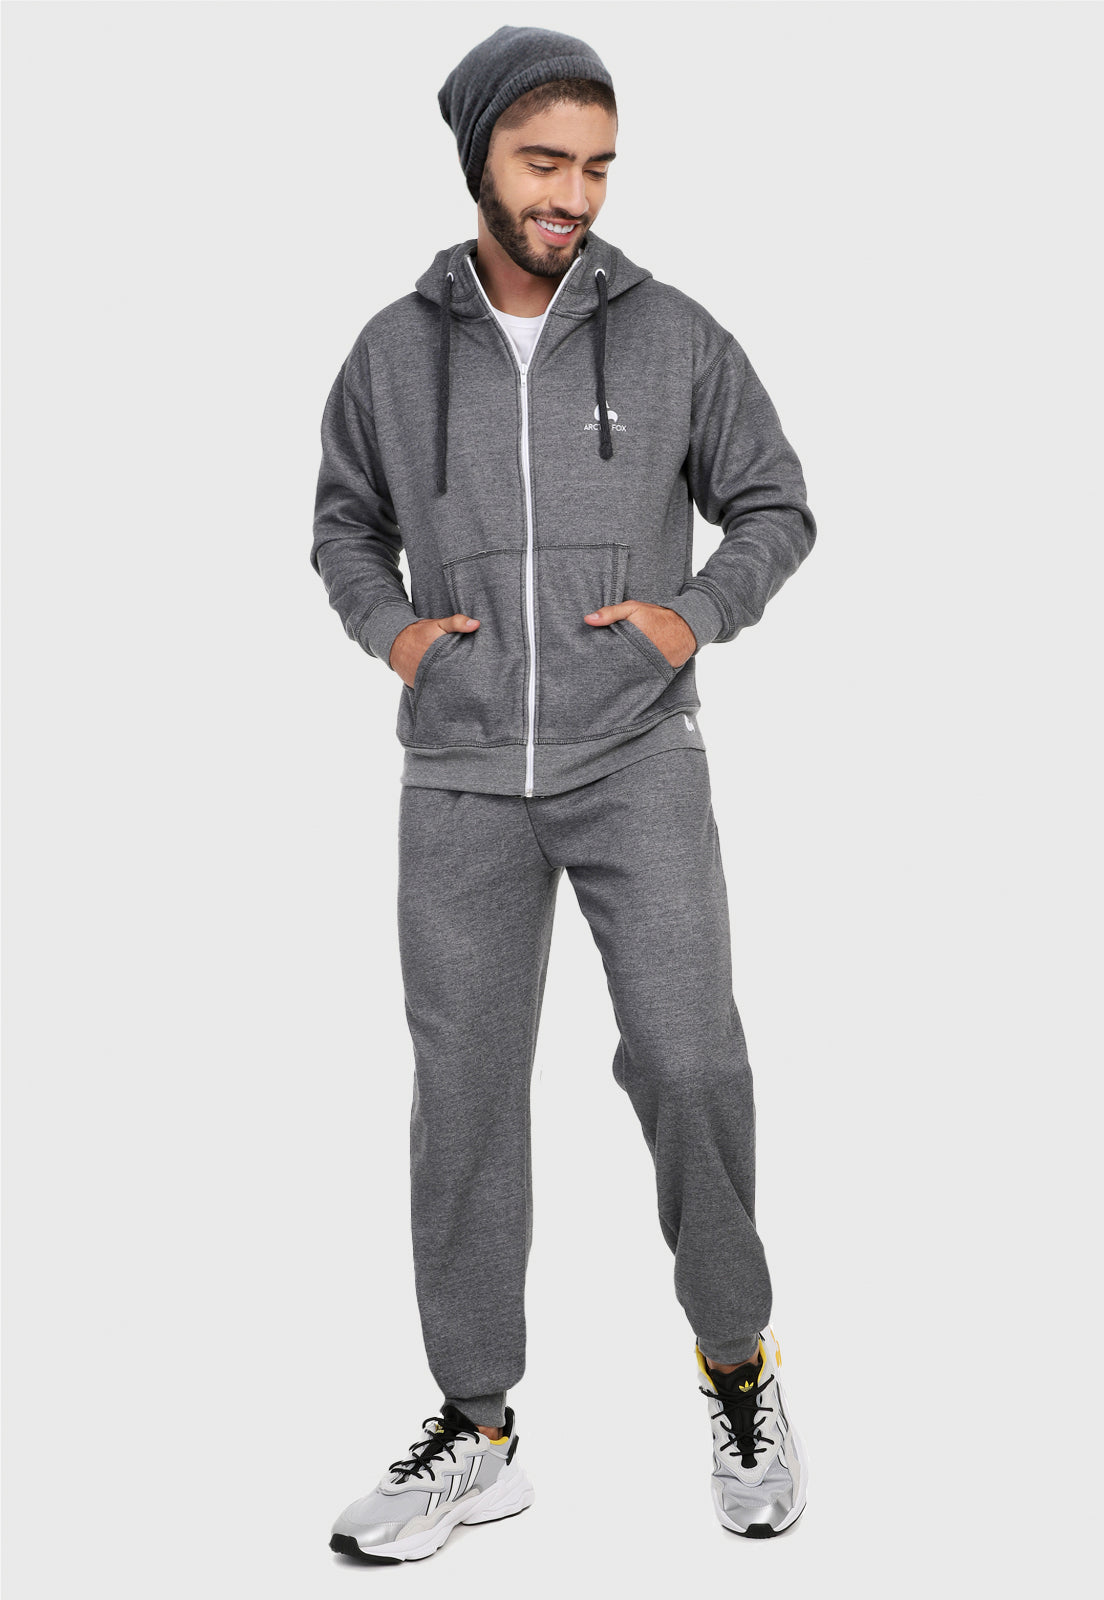 Hombre adulto vistiendo la sudadera para hombre conjunto chaqueta hoodie Gris Clásica con pantalón de sudadera gris.